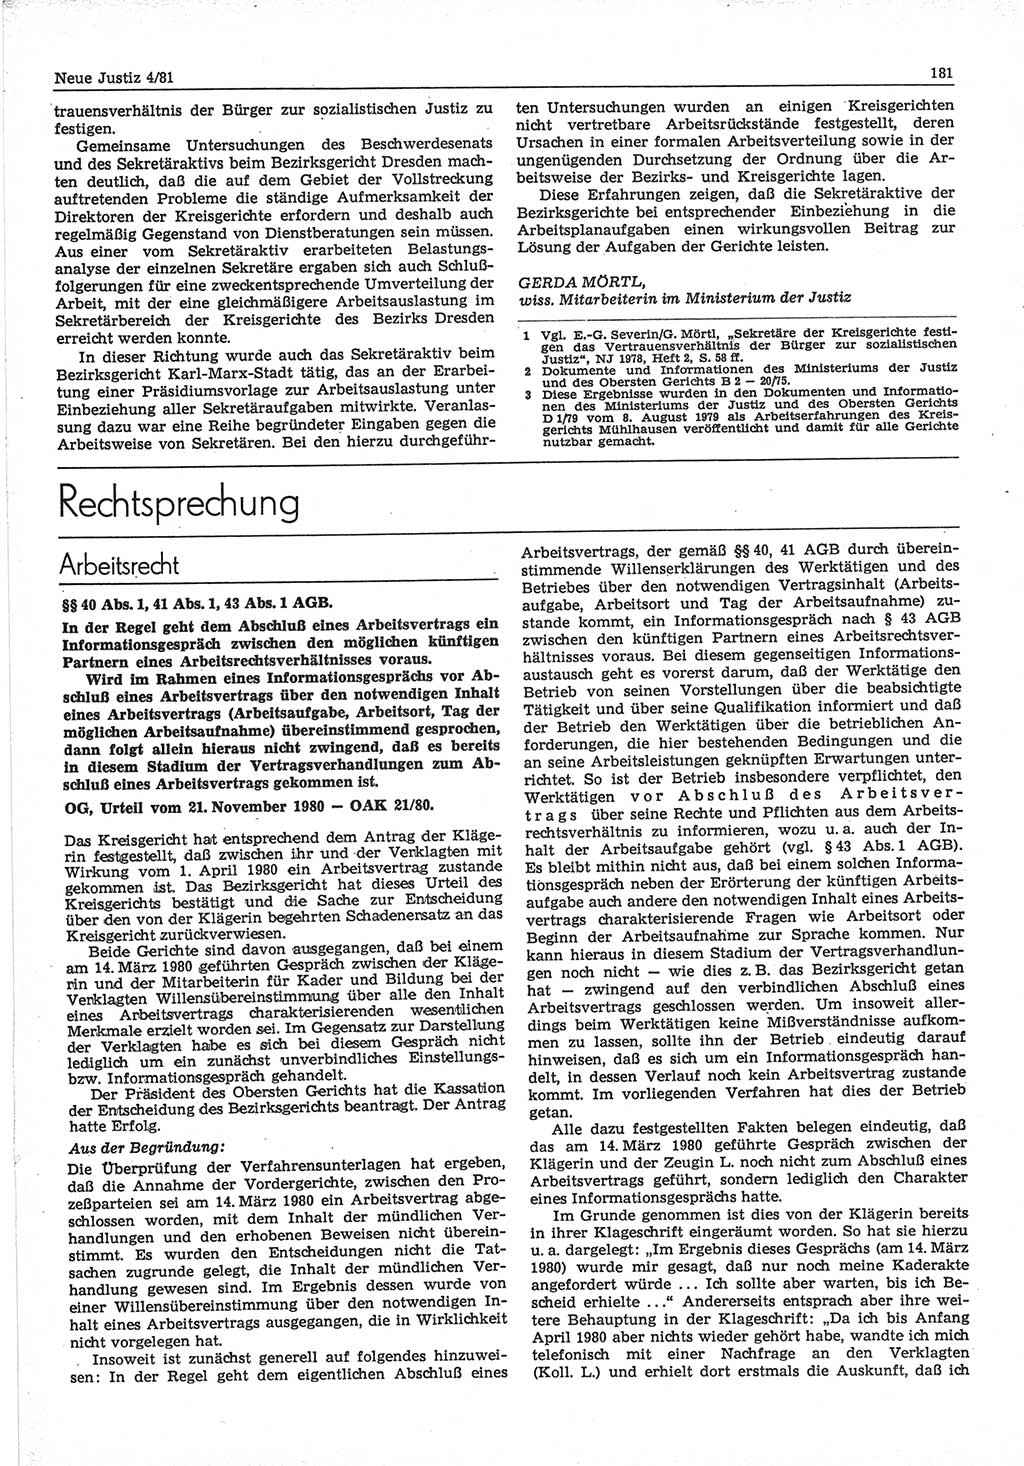 Neue Justiz (NJ), Zeitschrift für sozialistisches Recht und Gesetzlichkeit [Deutsche Demokratische Republik (DDR)], 35. Jahrgang 1981, Seite 181 (NJ DDR 1981, S. 181)